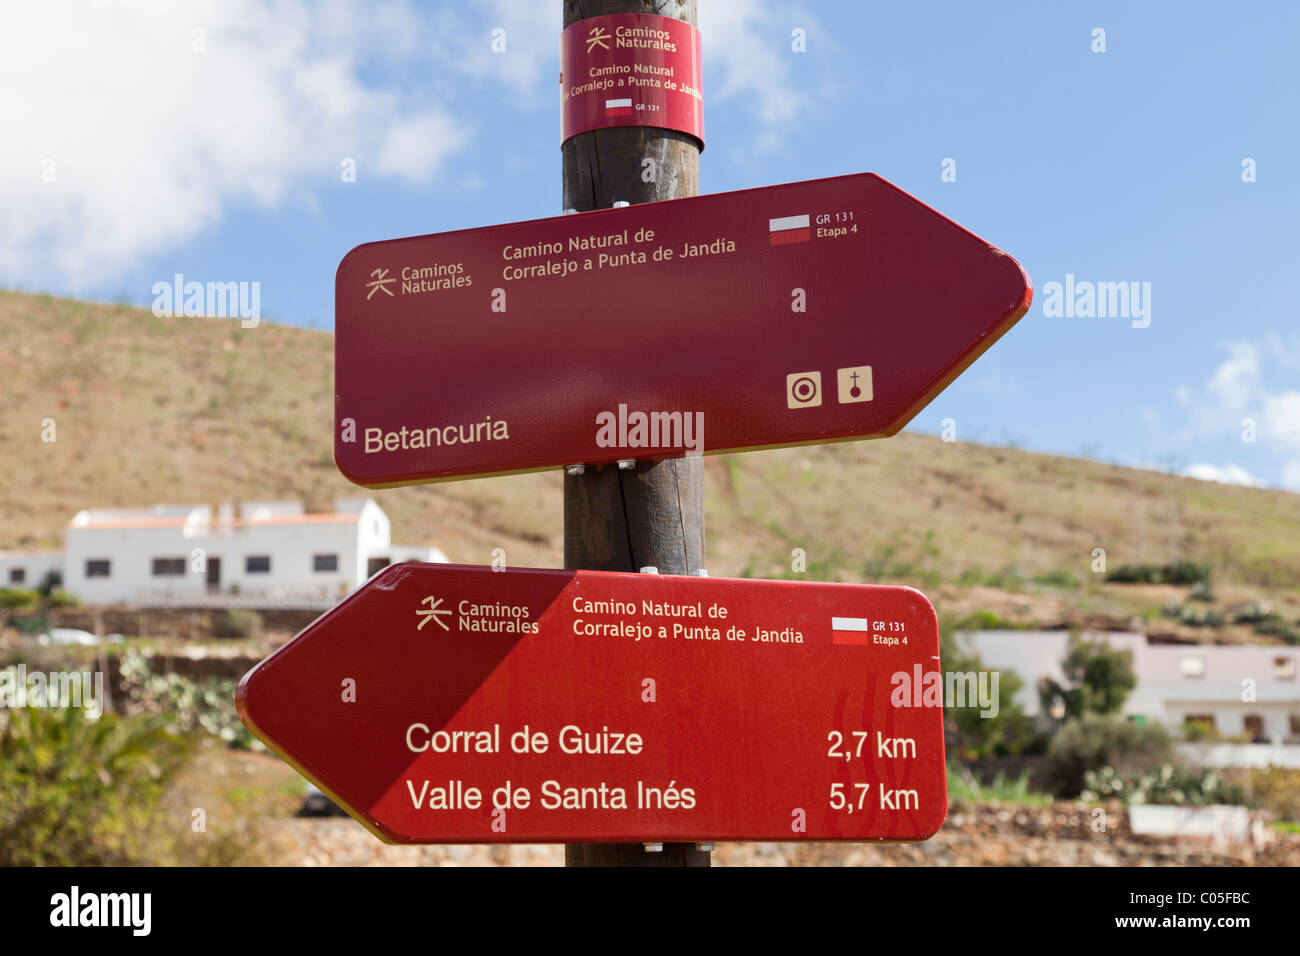 Wanderweg Zeichen für GR-131, eine lange Strecke Wanderweg auf der Kanarischen Insel Fuerteventura, gesehen hier bei Betancuria Stockfoto